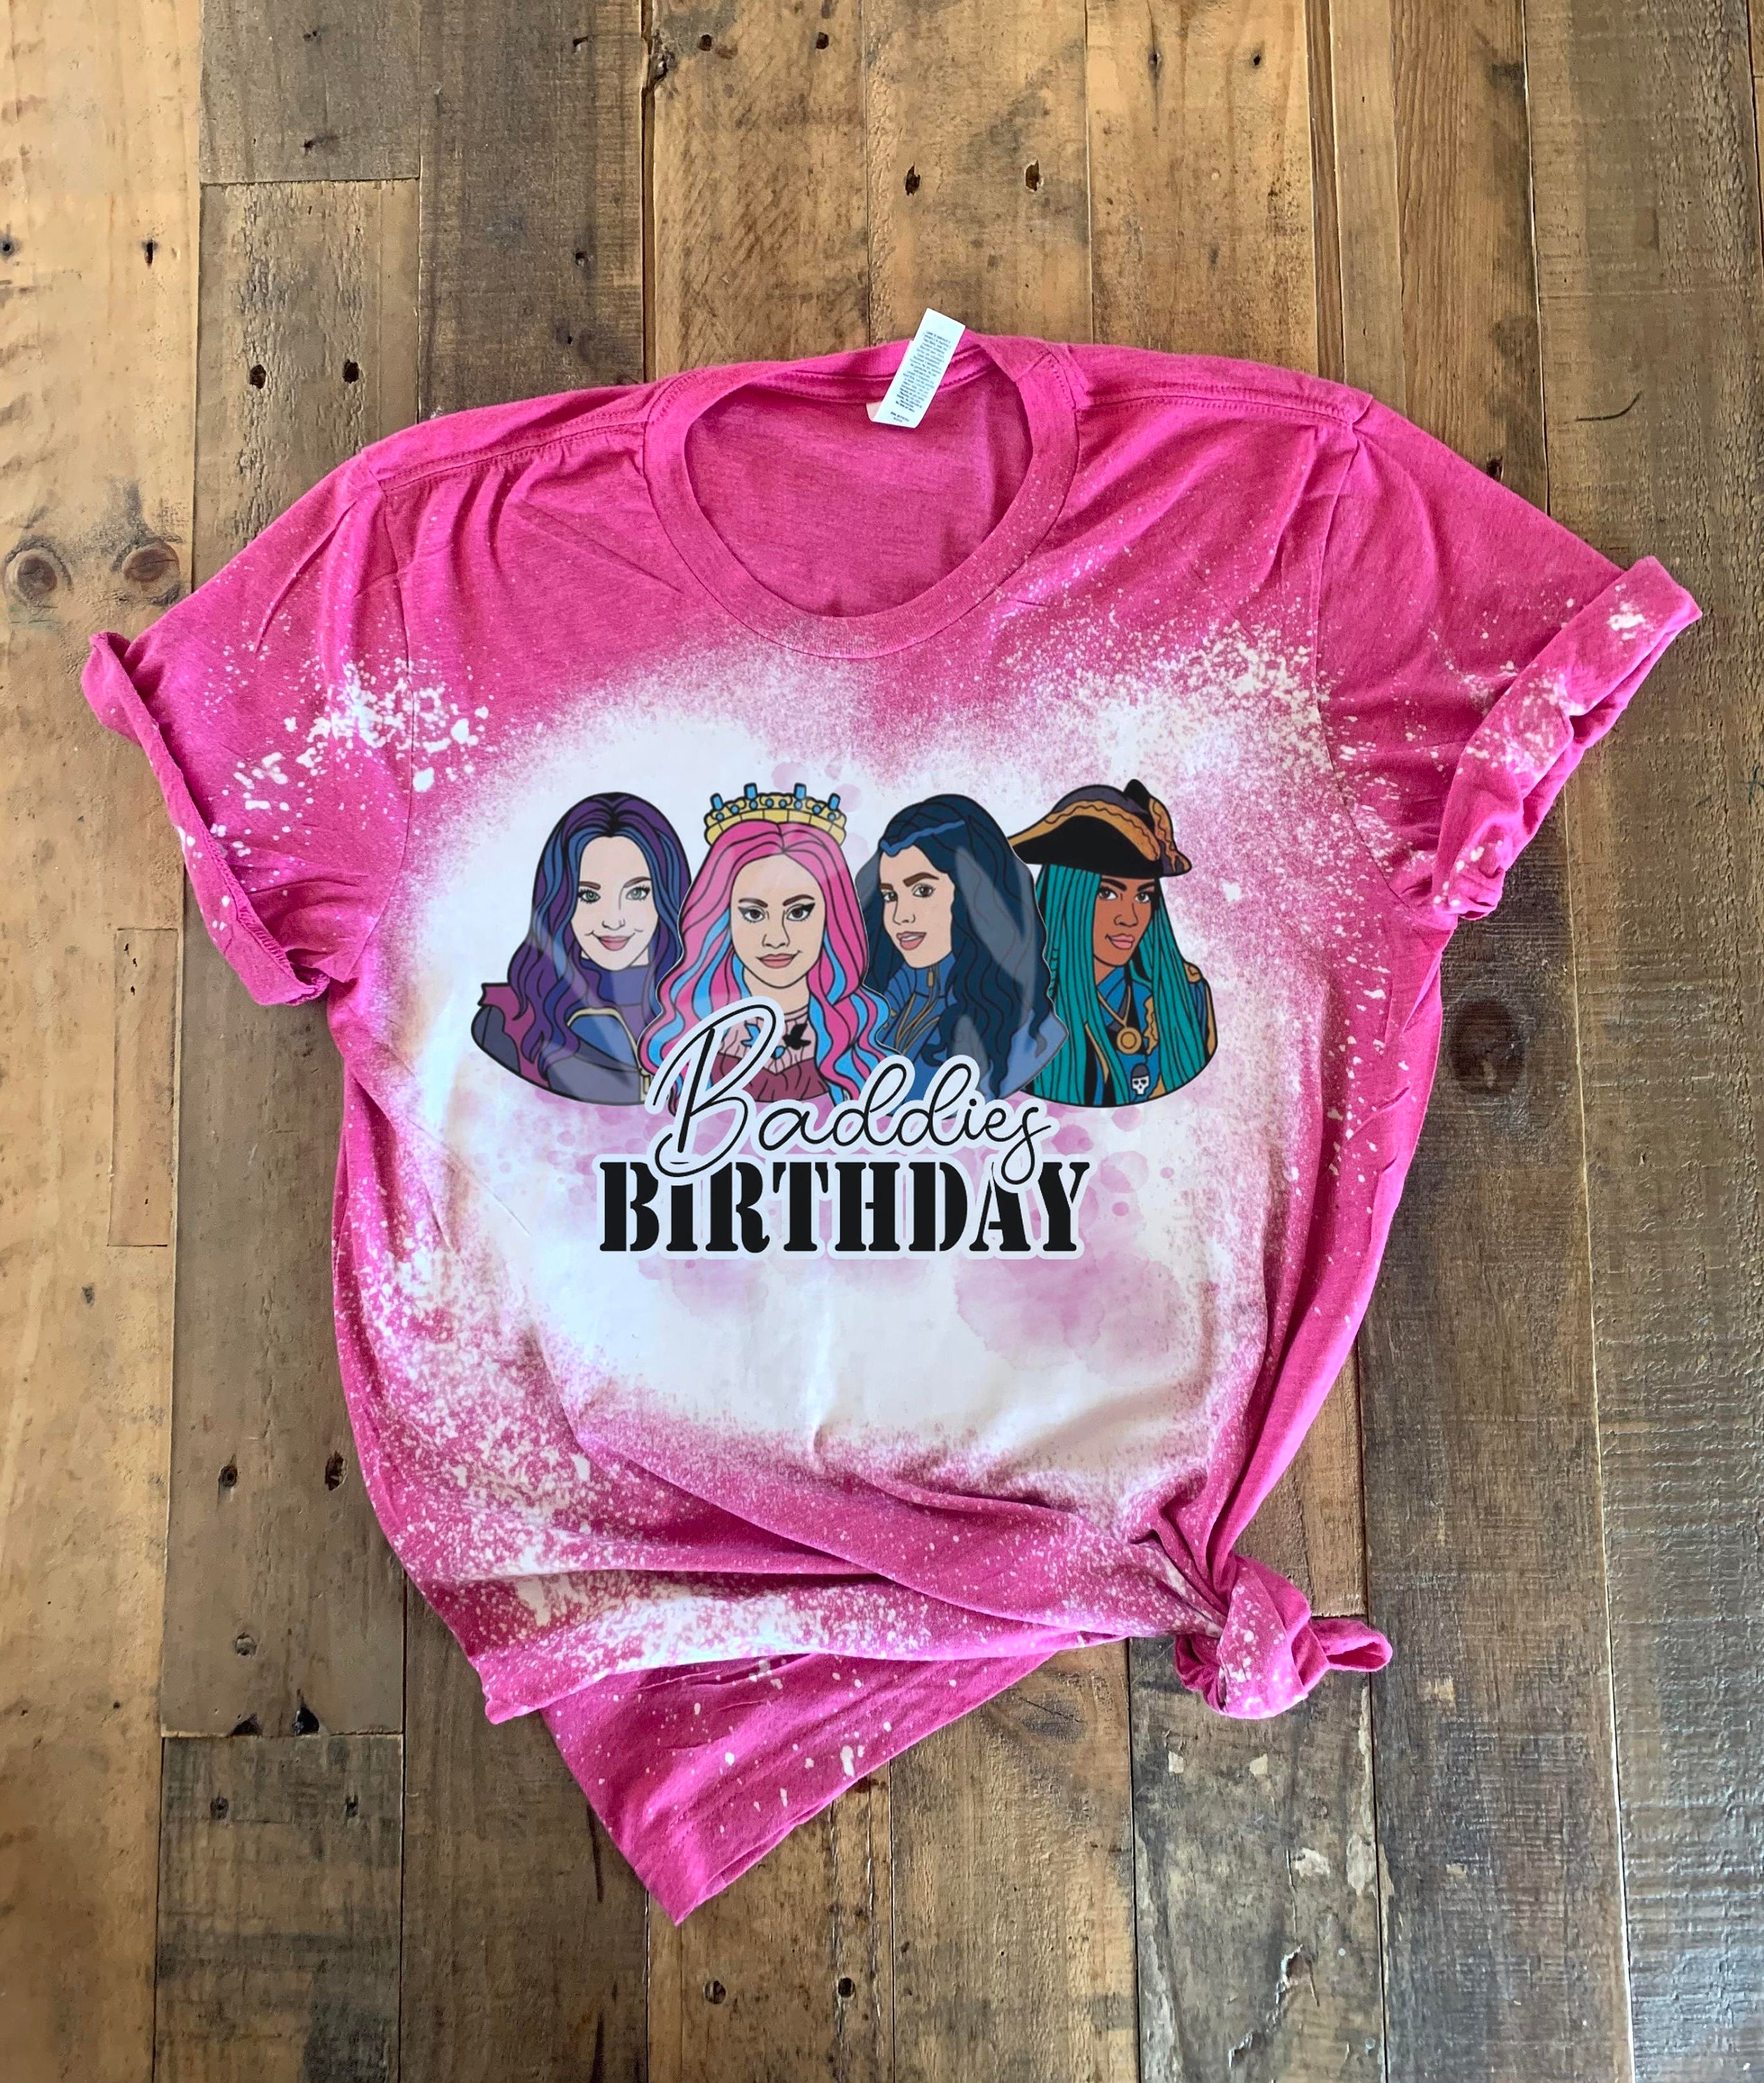 Descendants 3 Birthday Shirt - PimpYourWorld Birthday Party Supplies